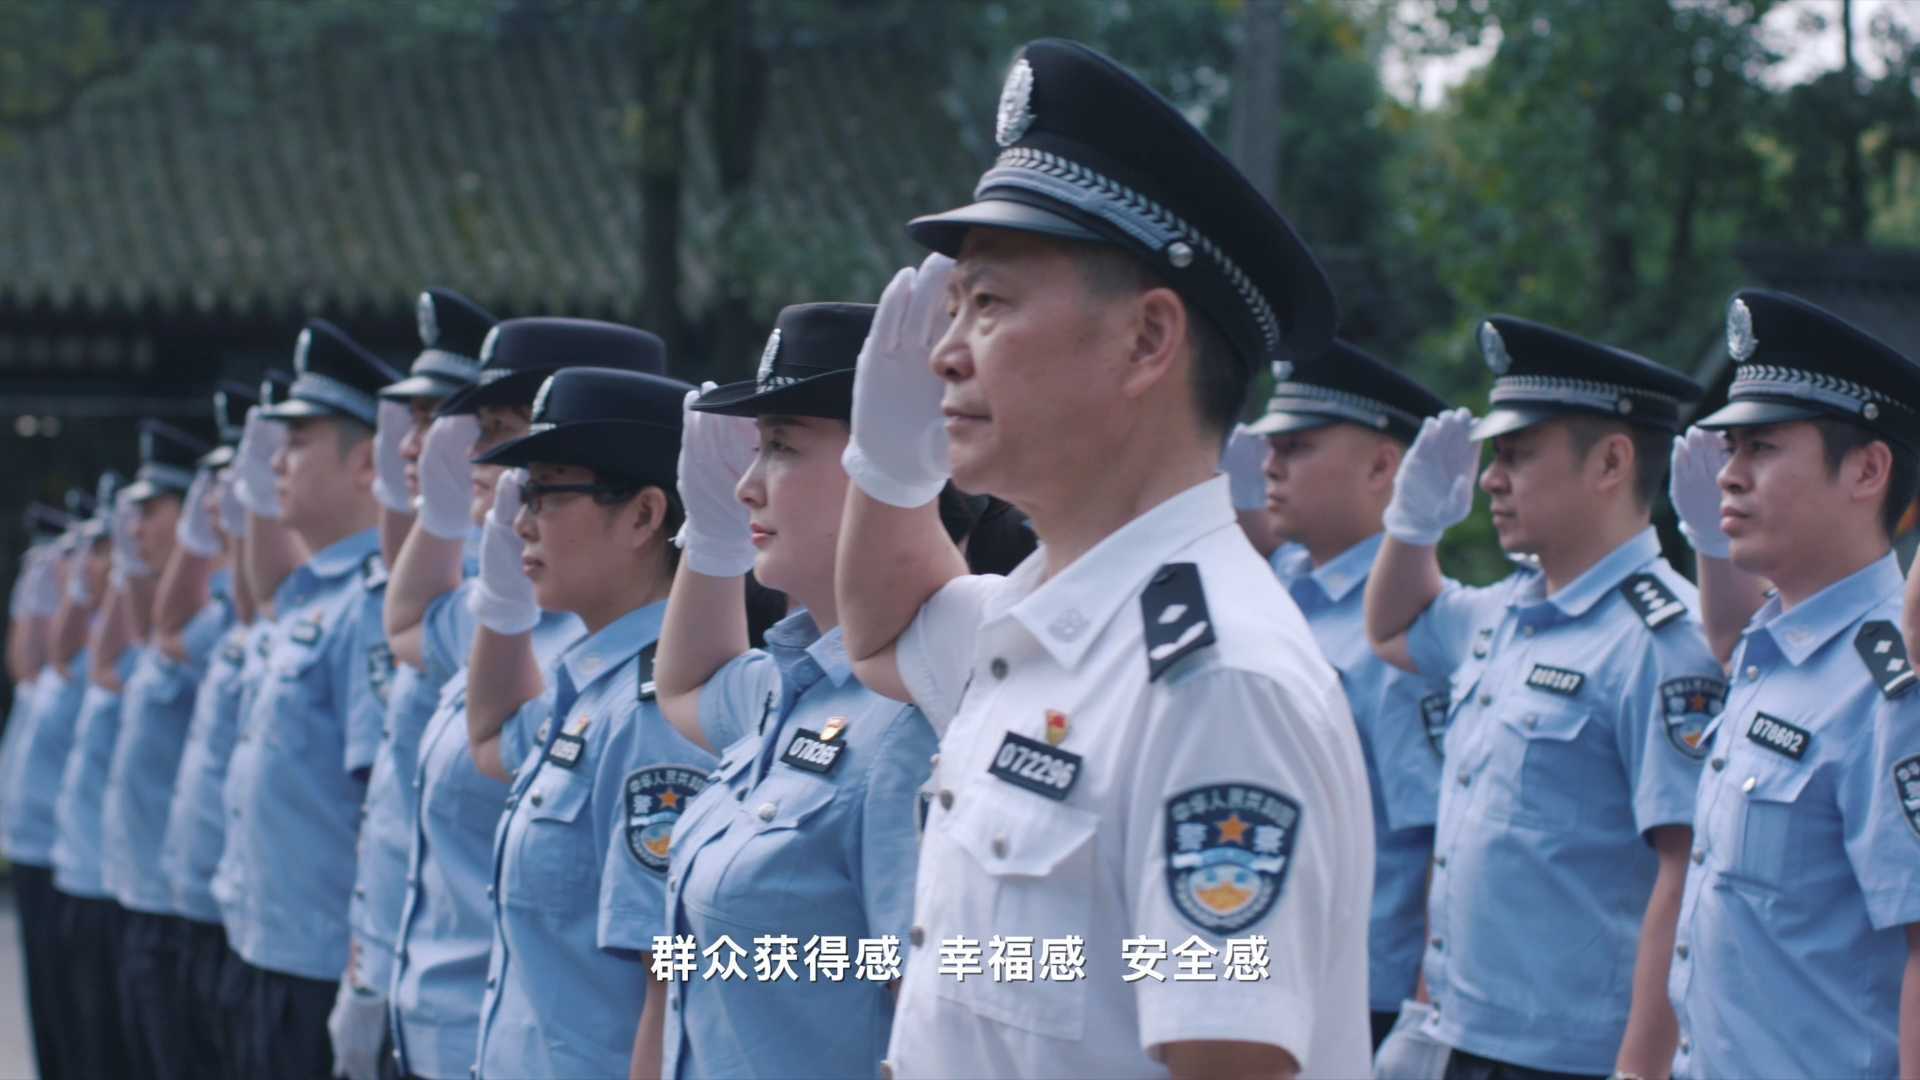 武侯公安分局枫桥式派出所创建宣传片《“石榴籽”背后的枫桥情》